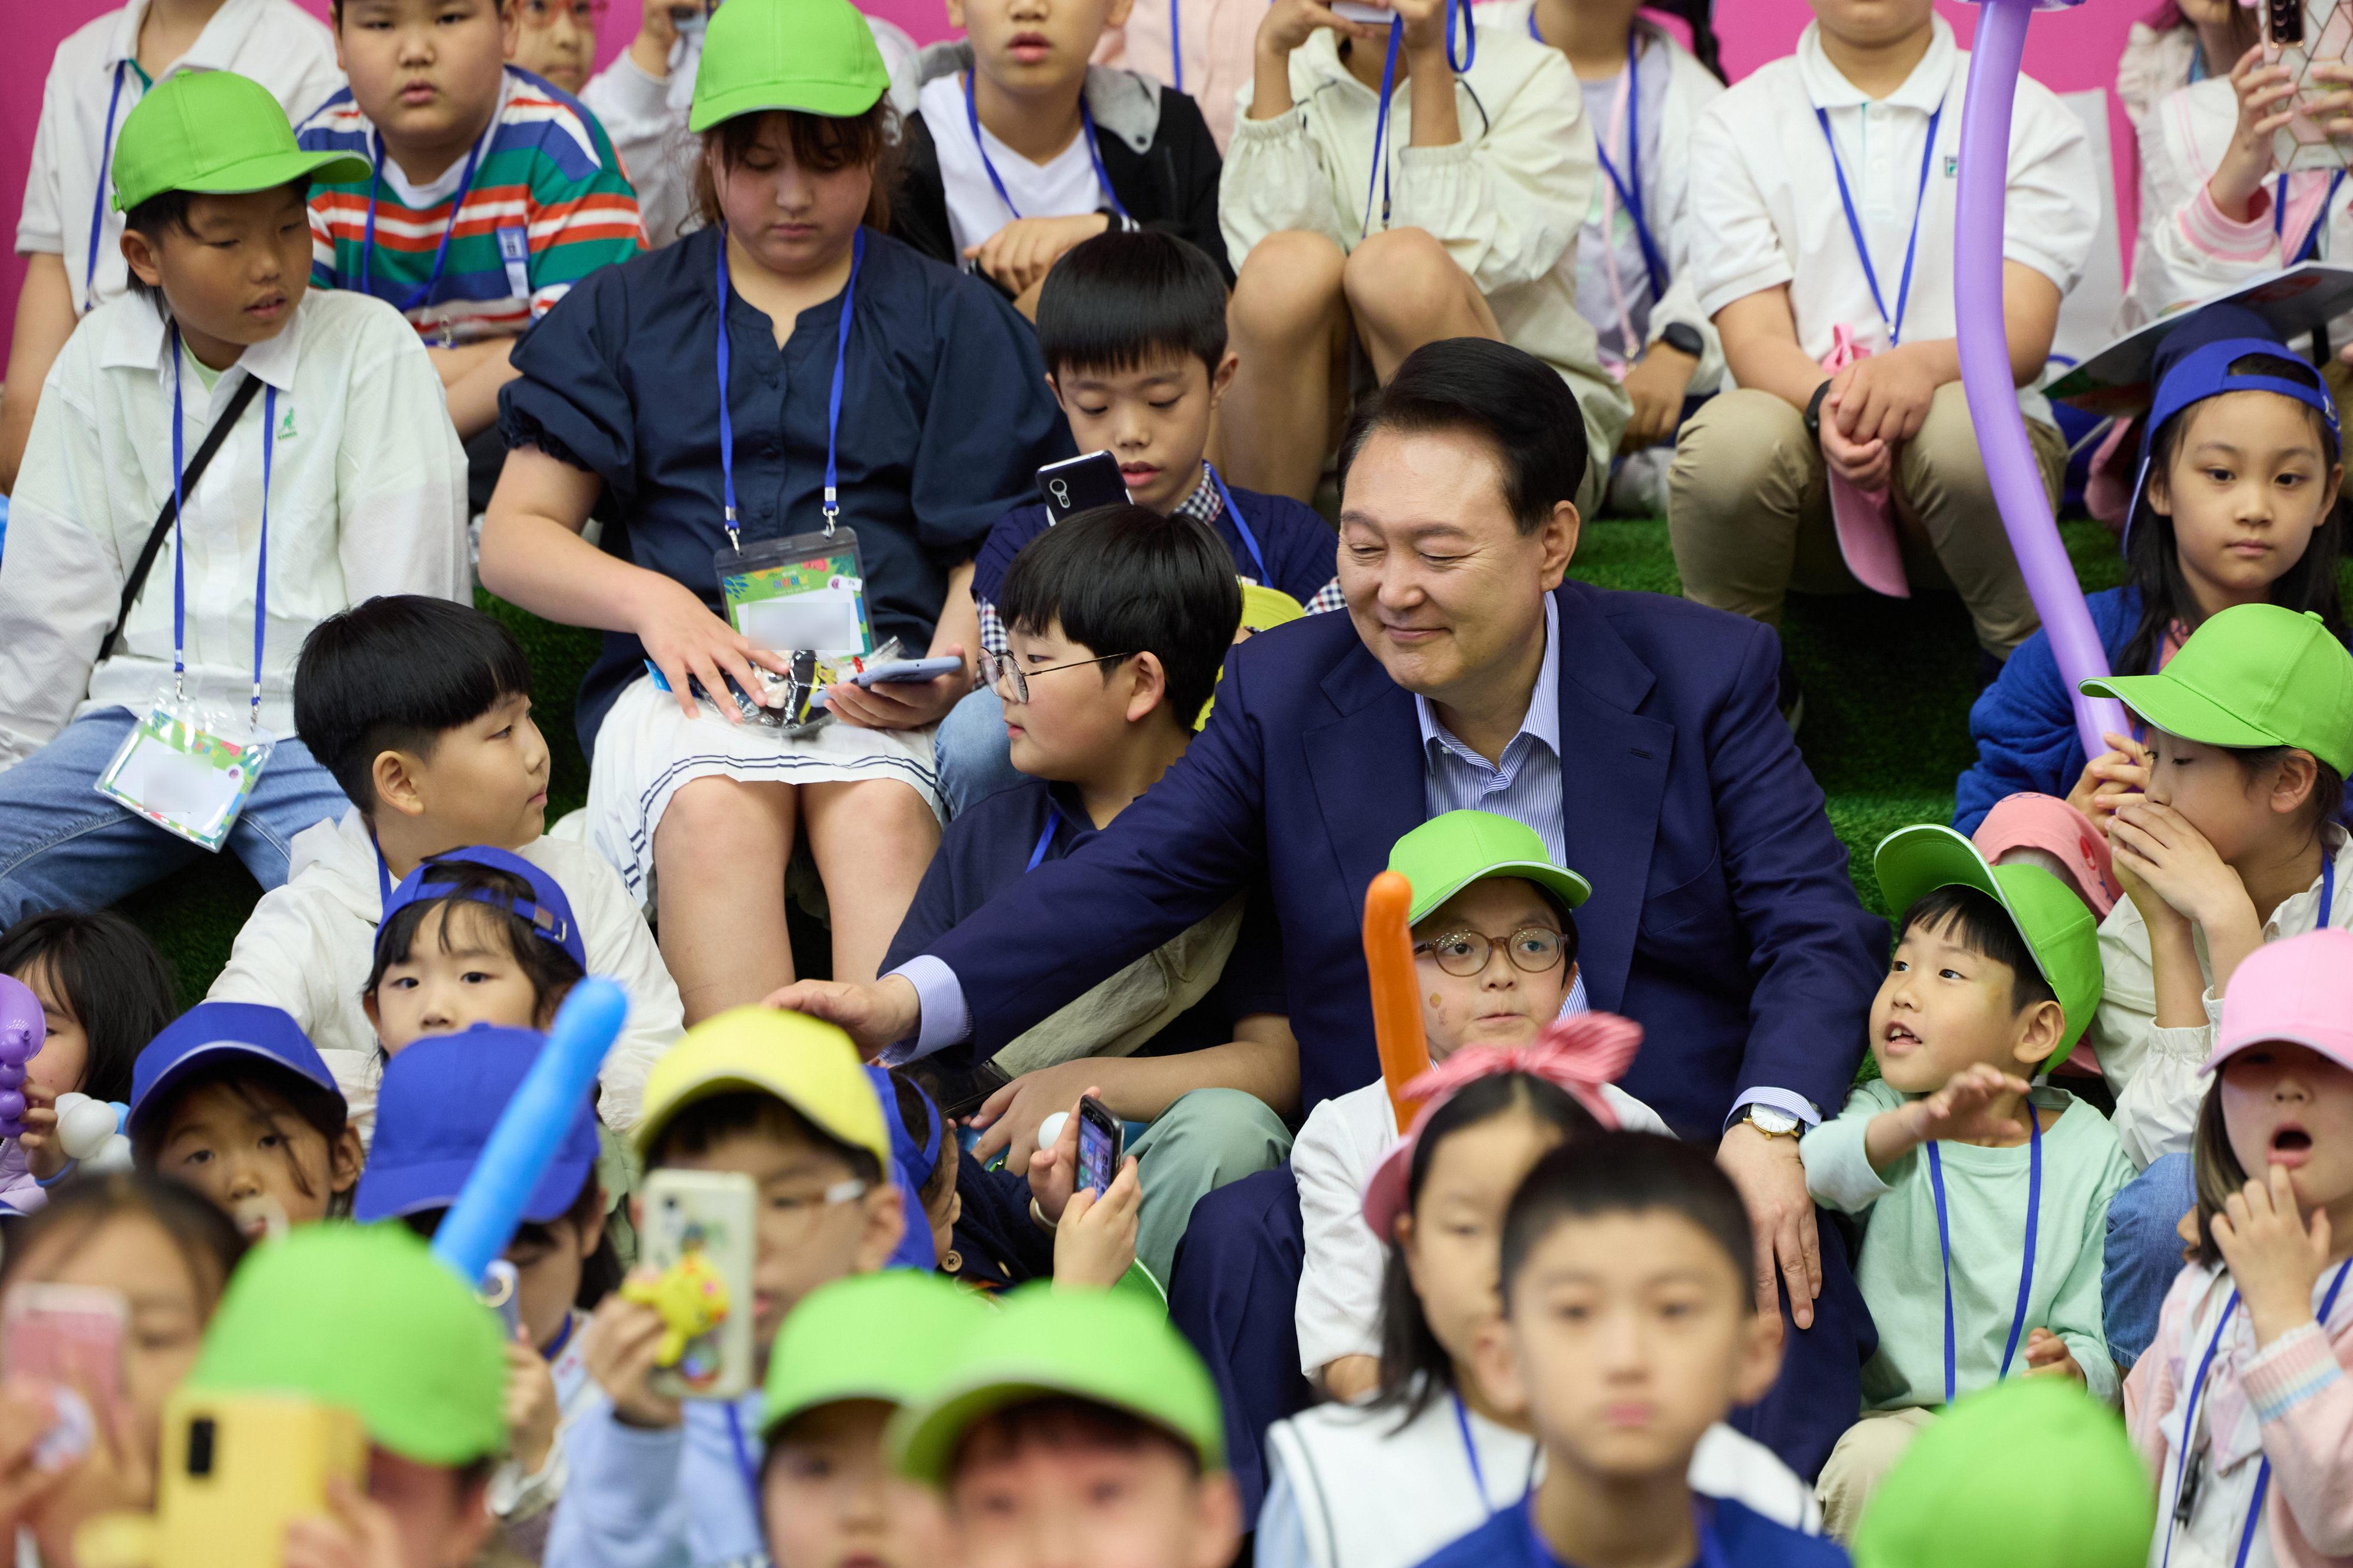 ‘버블 매직쇼’ 관람 어린이들과 대화하는 윤석열 대통령